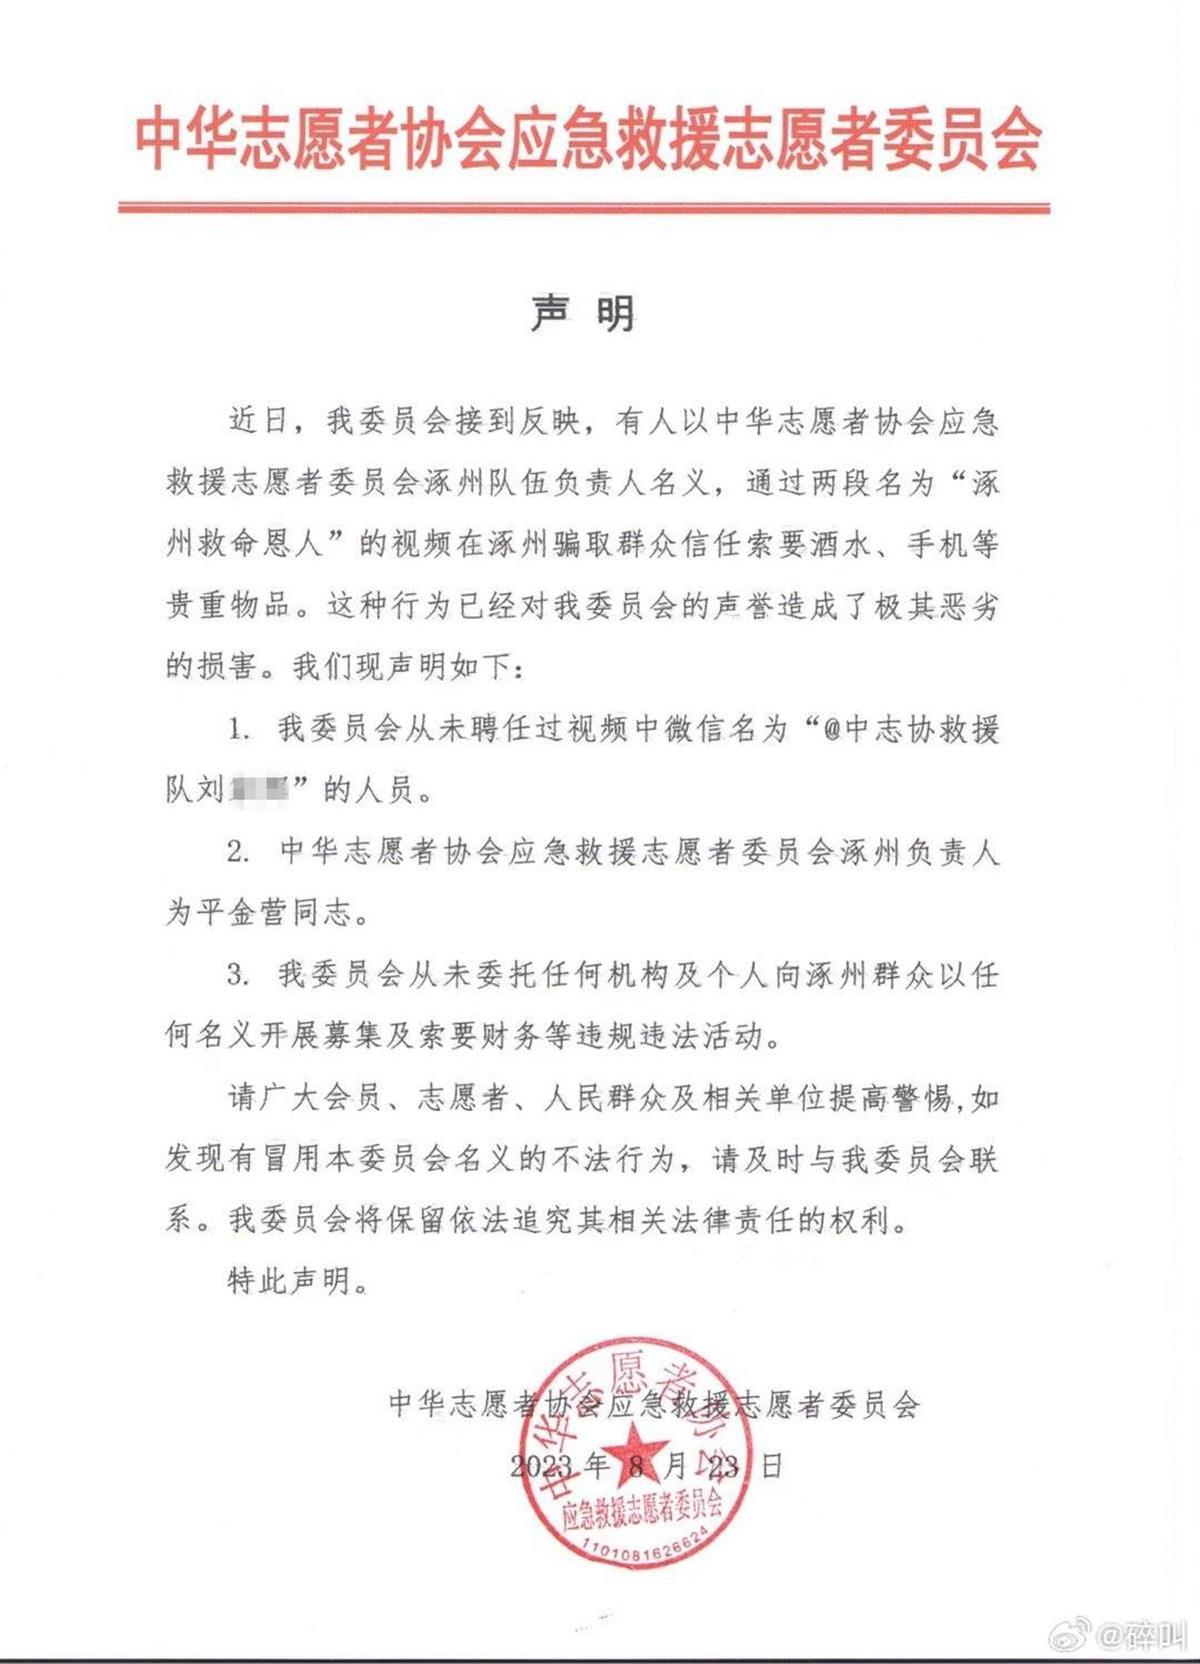 “救援队队长”自称在涿州救了86人，还向他人索要物资，中志协声明系冒牌，警方介入